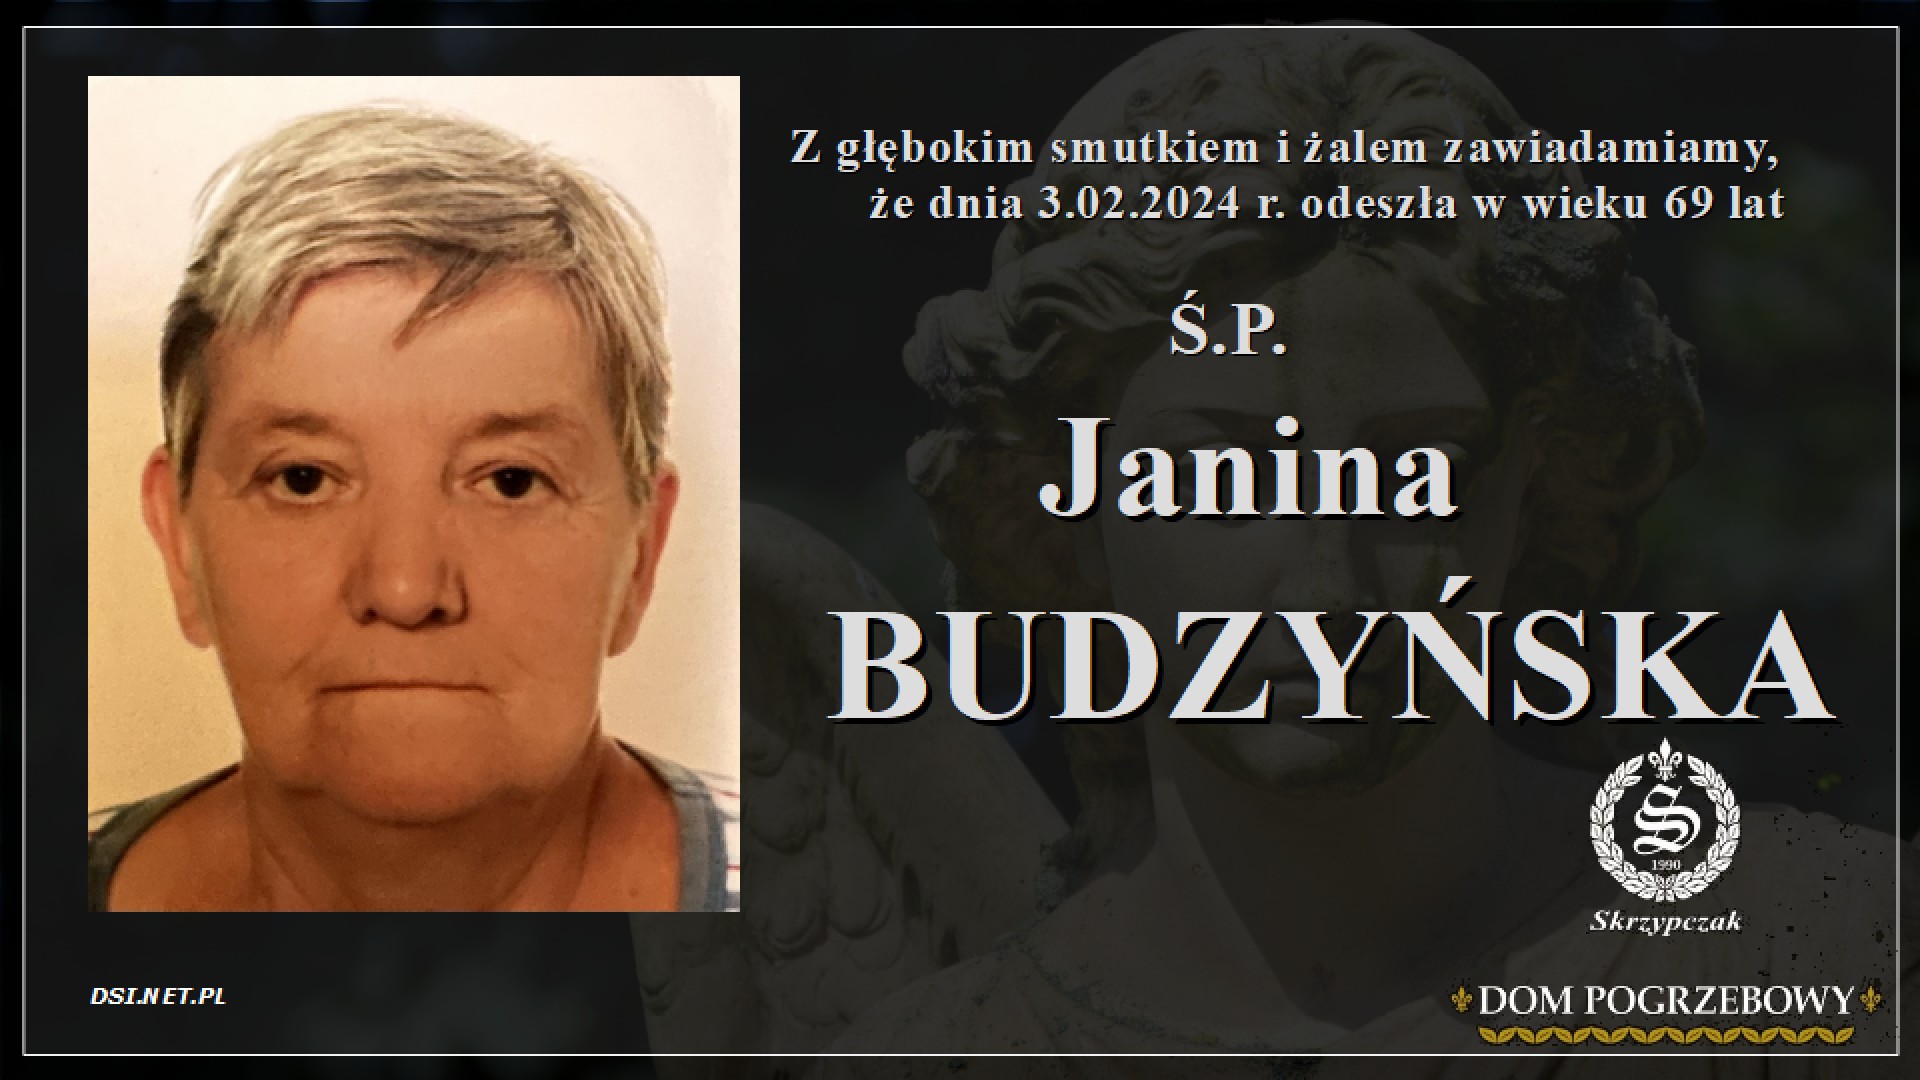 Ś.P. Janina Budzyńska